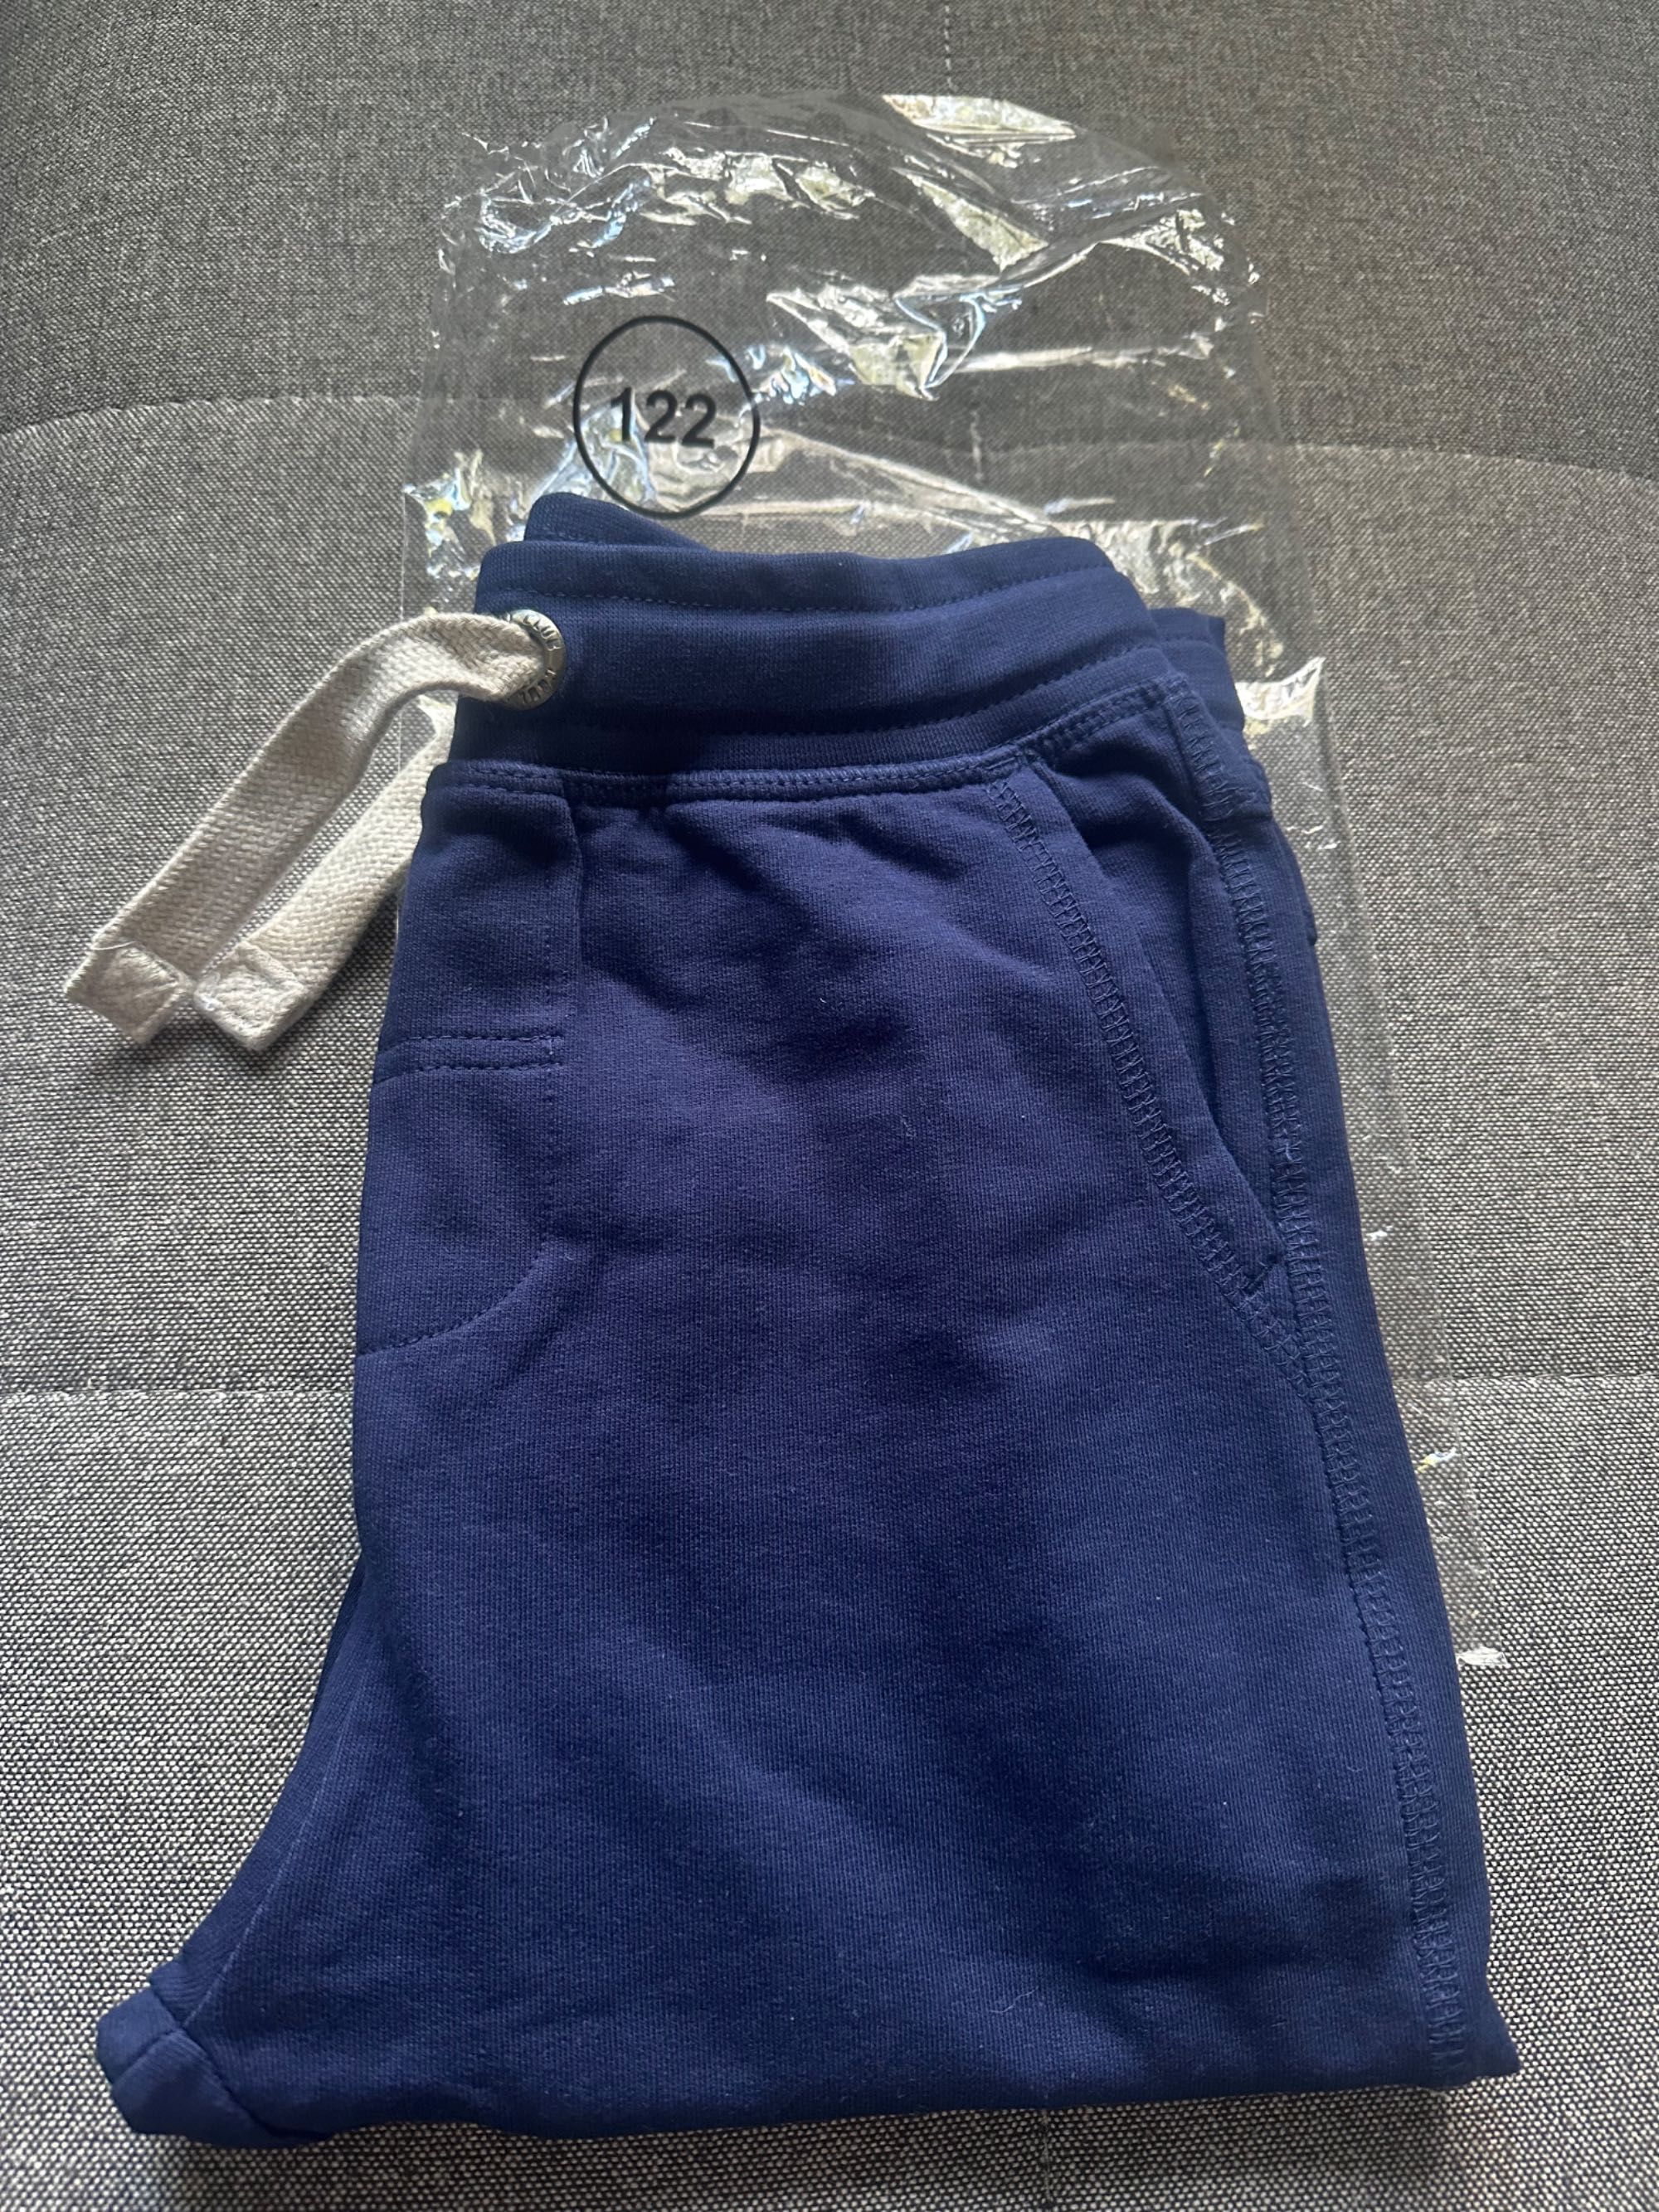 Granatowe spodnie dresowe dla chłopca rozmiar 122 ze Smyka